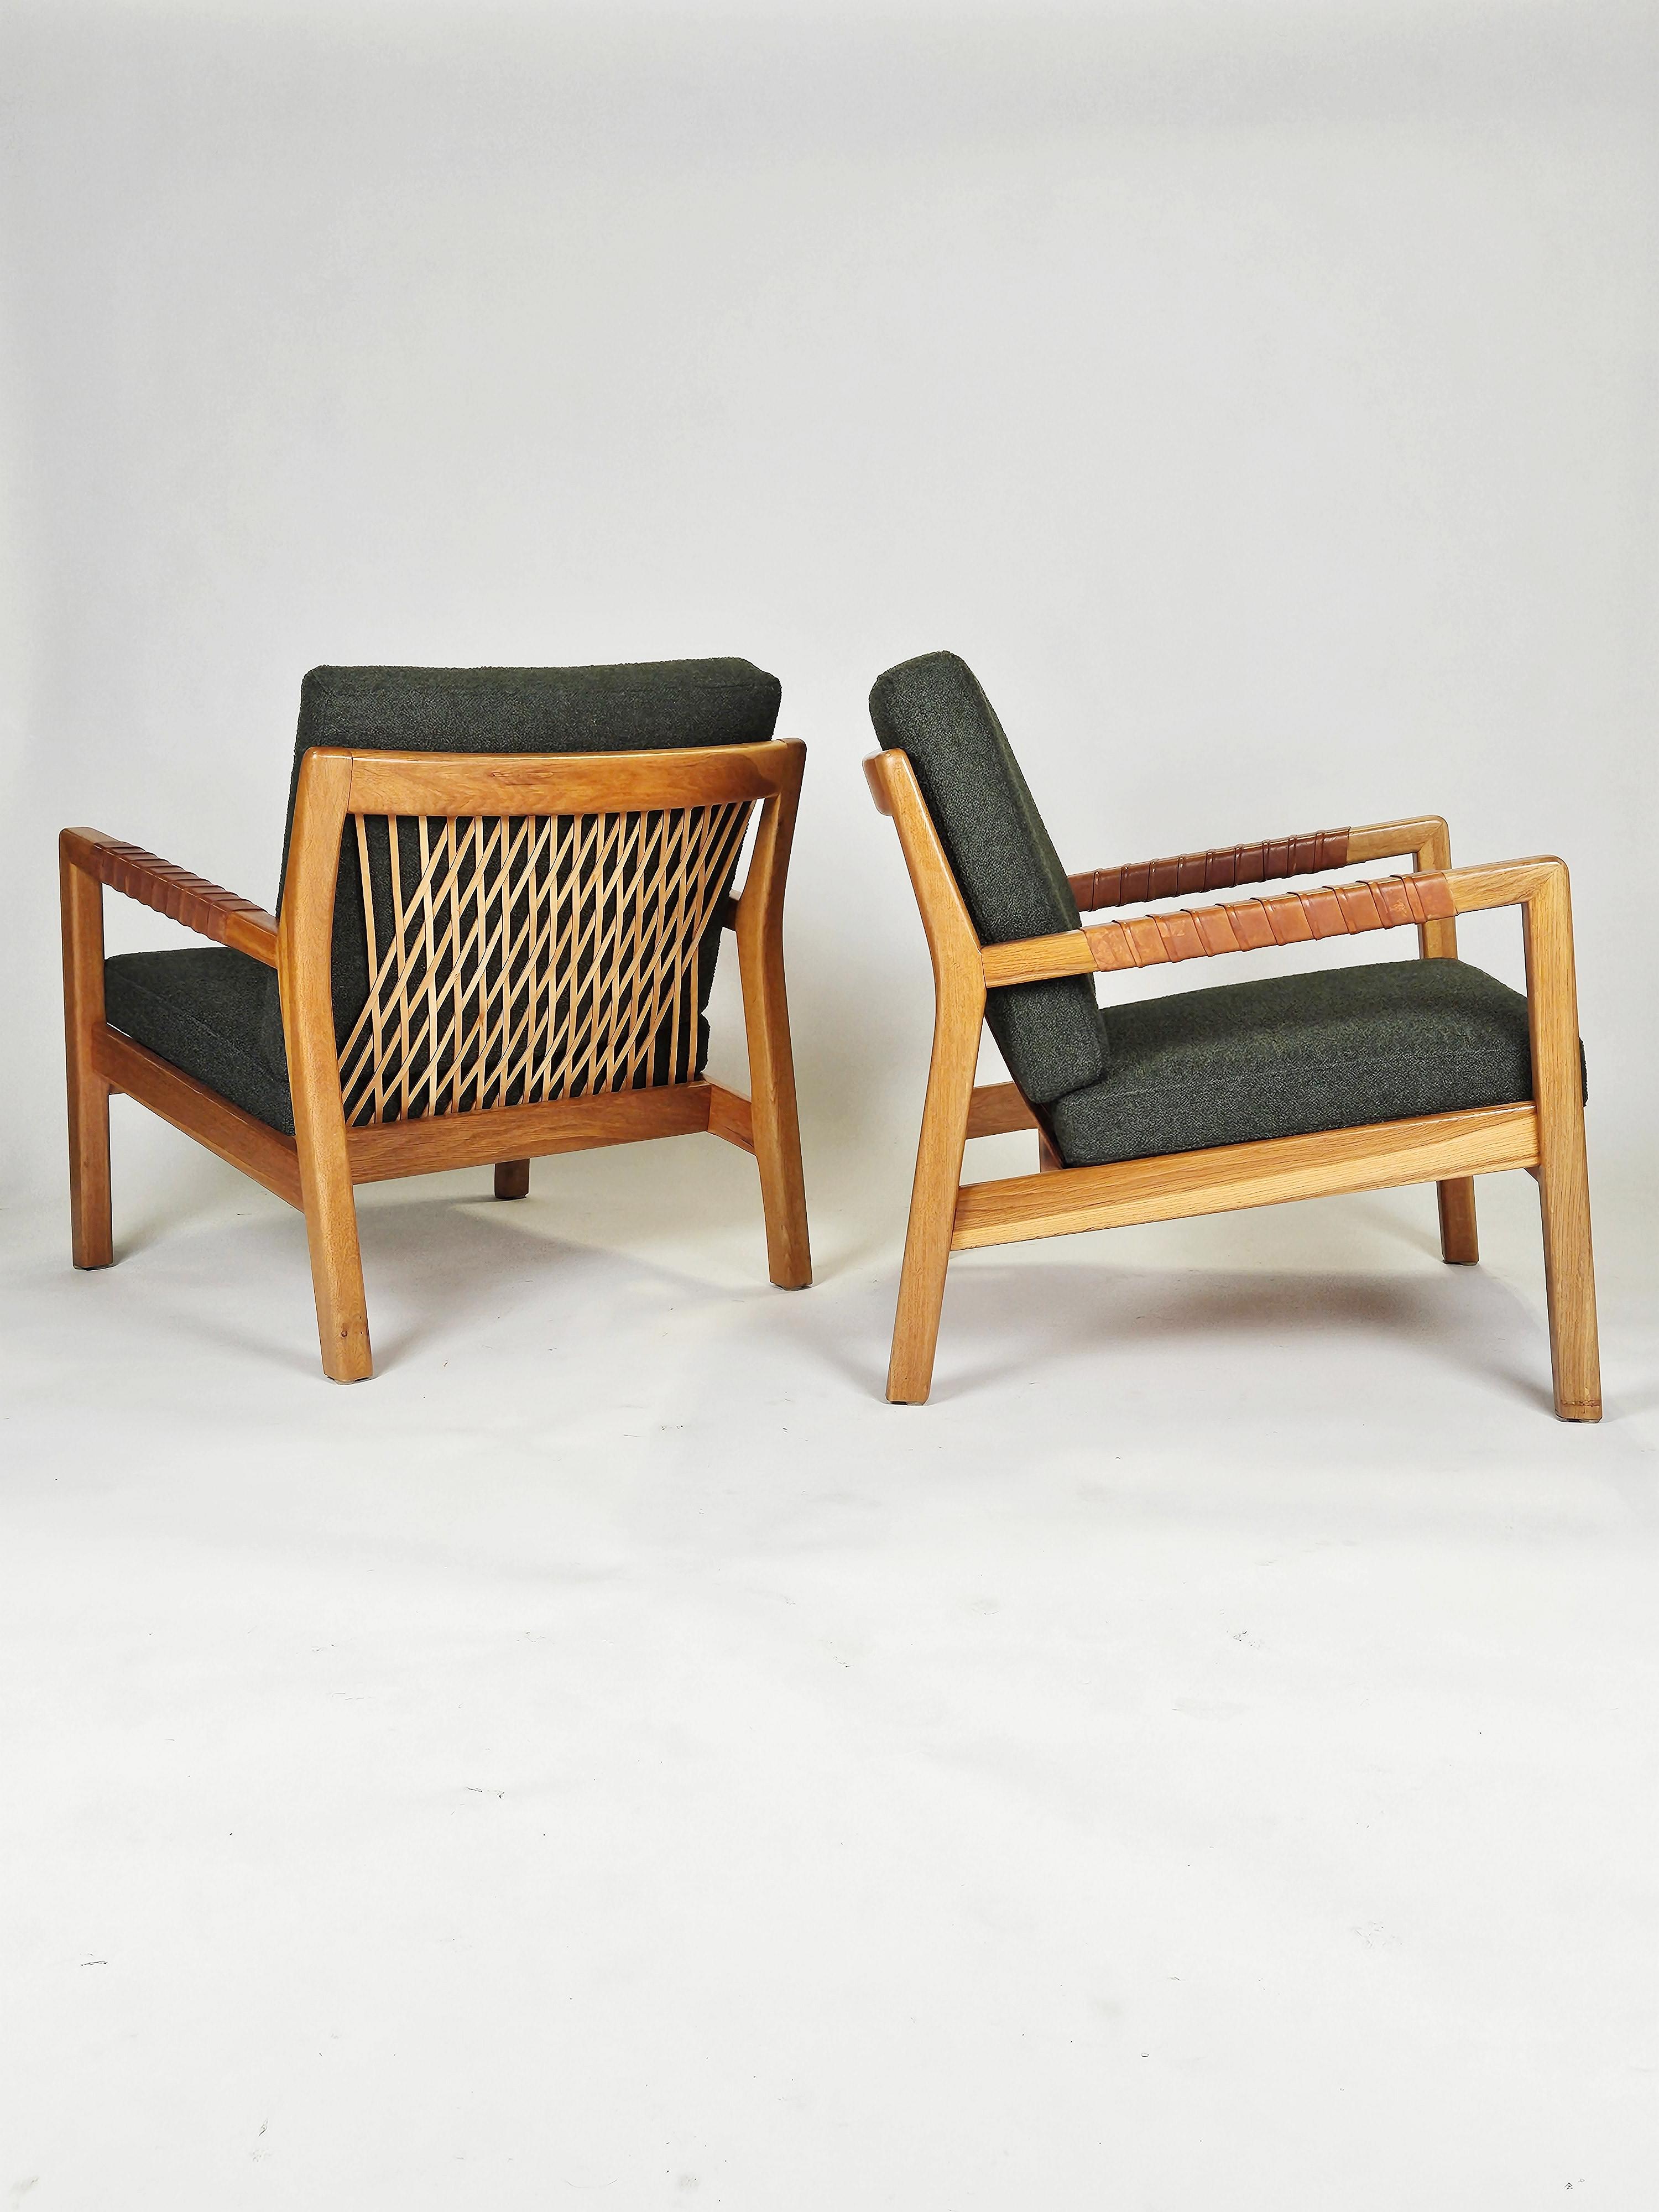 Rare paire de fauteuils conçus par Carl Gustaf Hiort af Ornäs et produits par Puunveisto, Finlande, dans les années 1950. 

Fabriqué en frêne avec de beaux détails en cuir. Nouvellement tapissé d'un tissu bouclé de haute qualité en vert. 

